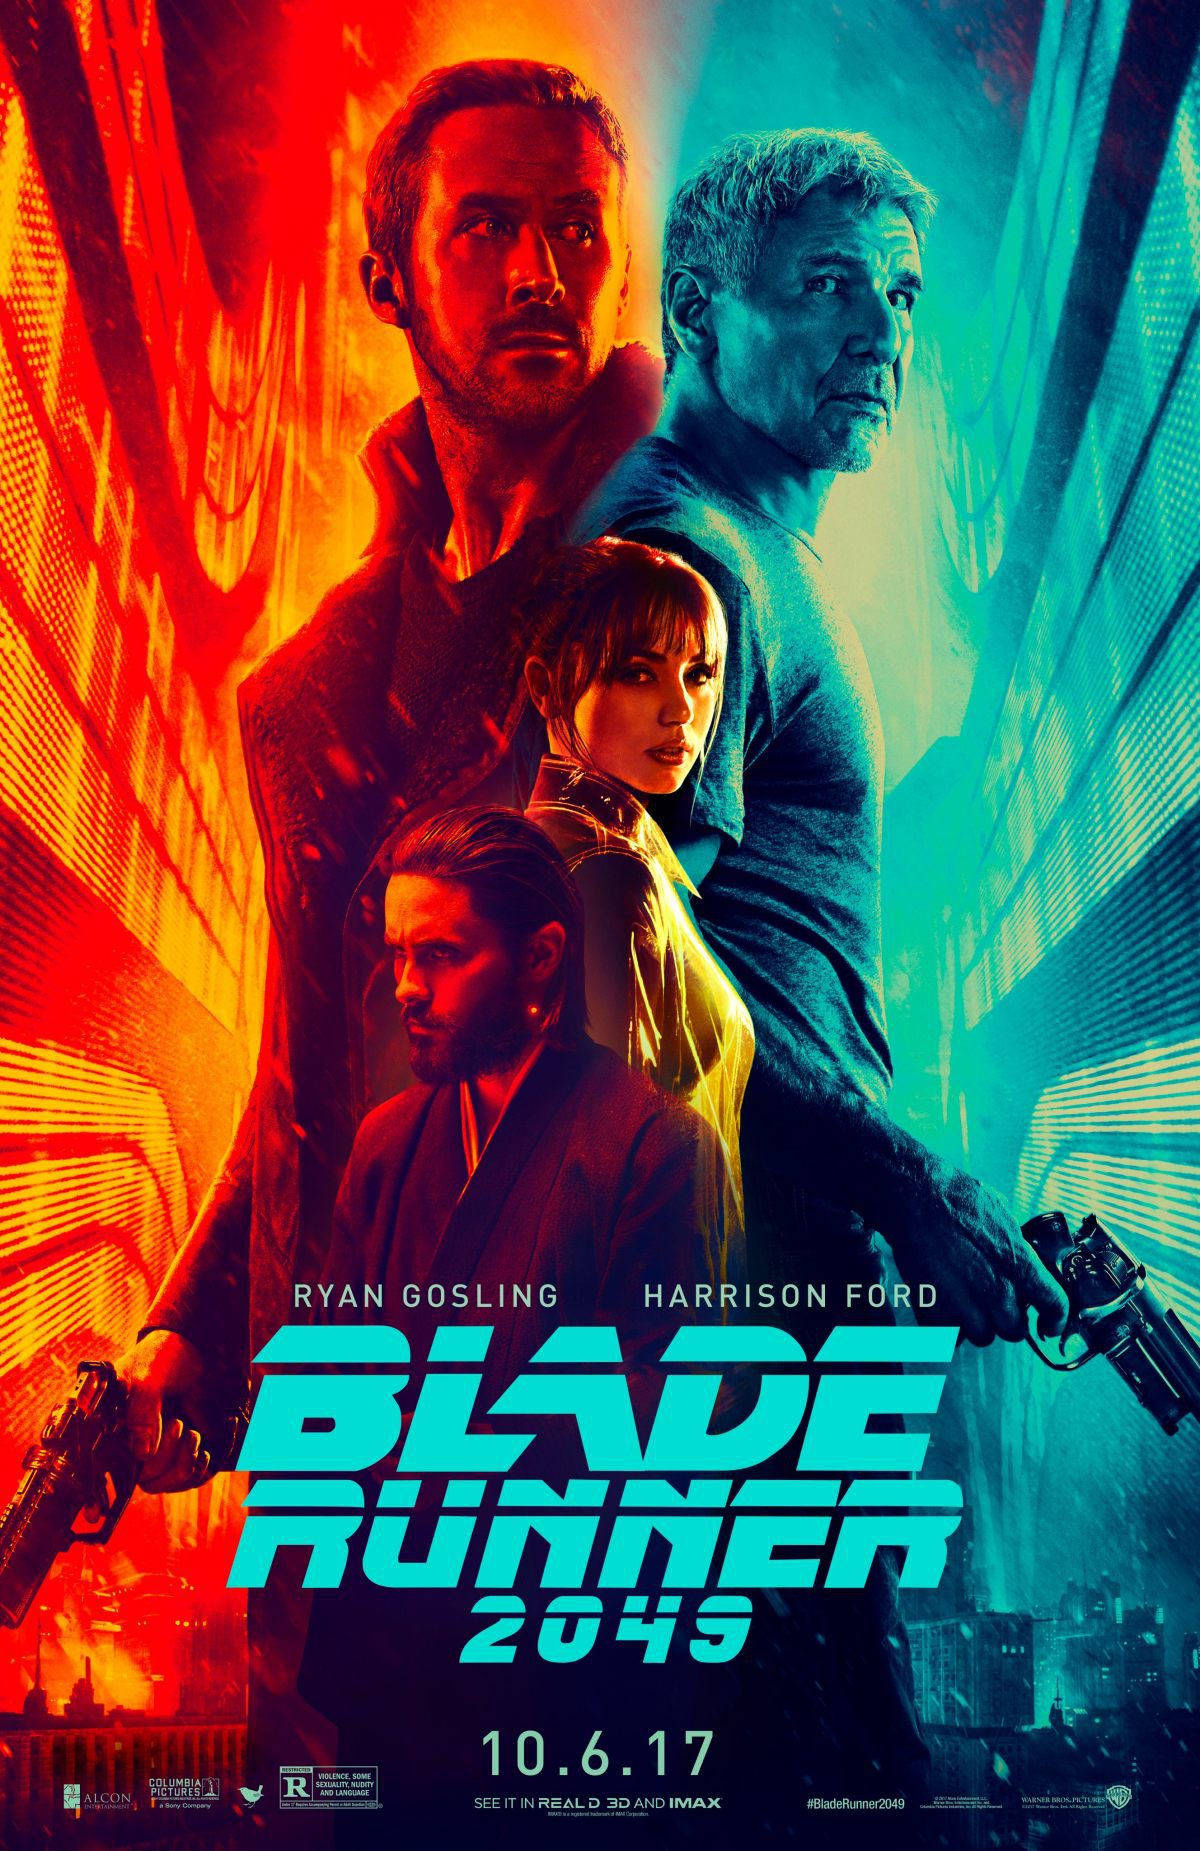 Blade-Runner-2049-poster.jpg